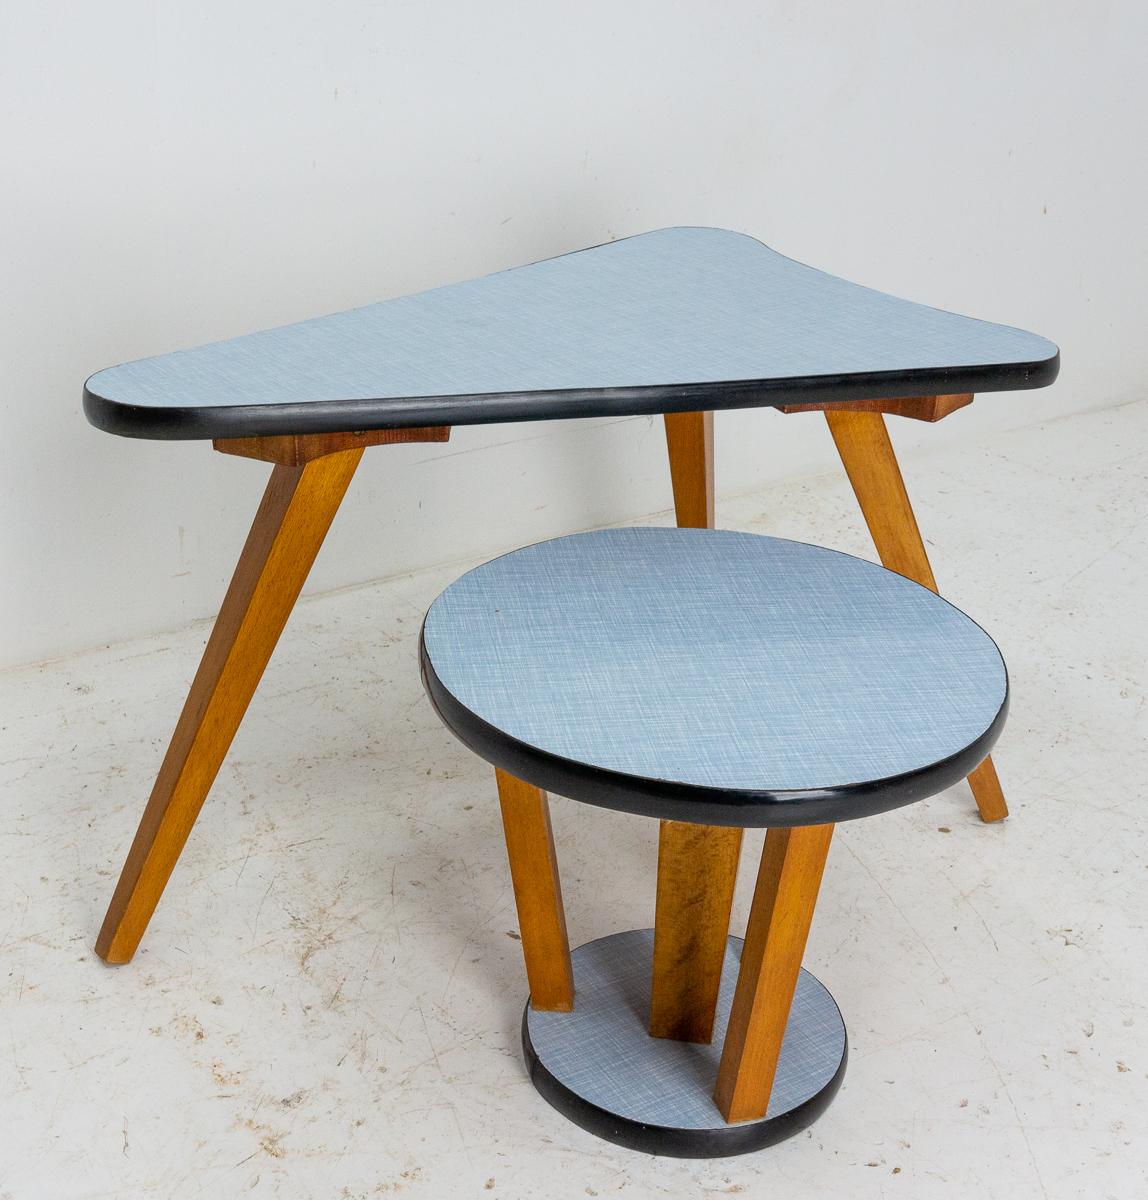 Satz von zwei Vintage Nesting Tisch Französisch, um 1950
Buche und blaues Formica
Kleiner runder Tisch: Durchmesser der Platte 37 cm (14.57 in.), Durchmesser der Unterseite 33 cm (12.99 in.)
Guter Vintage-Zustand, sehr originell.



 